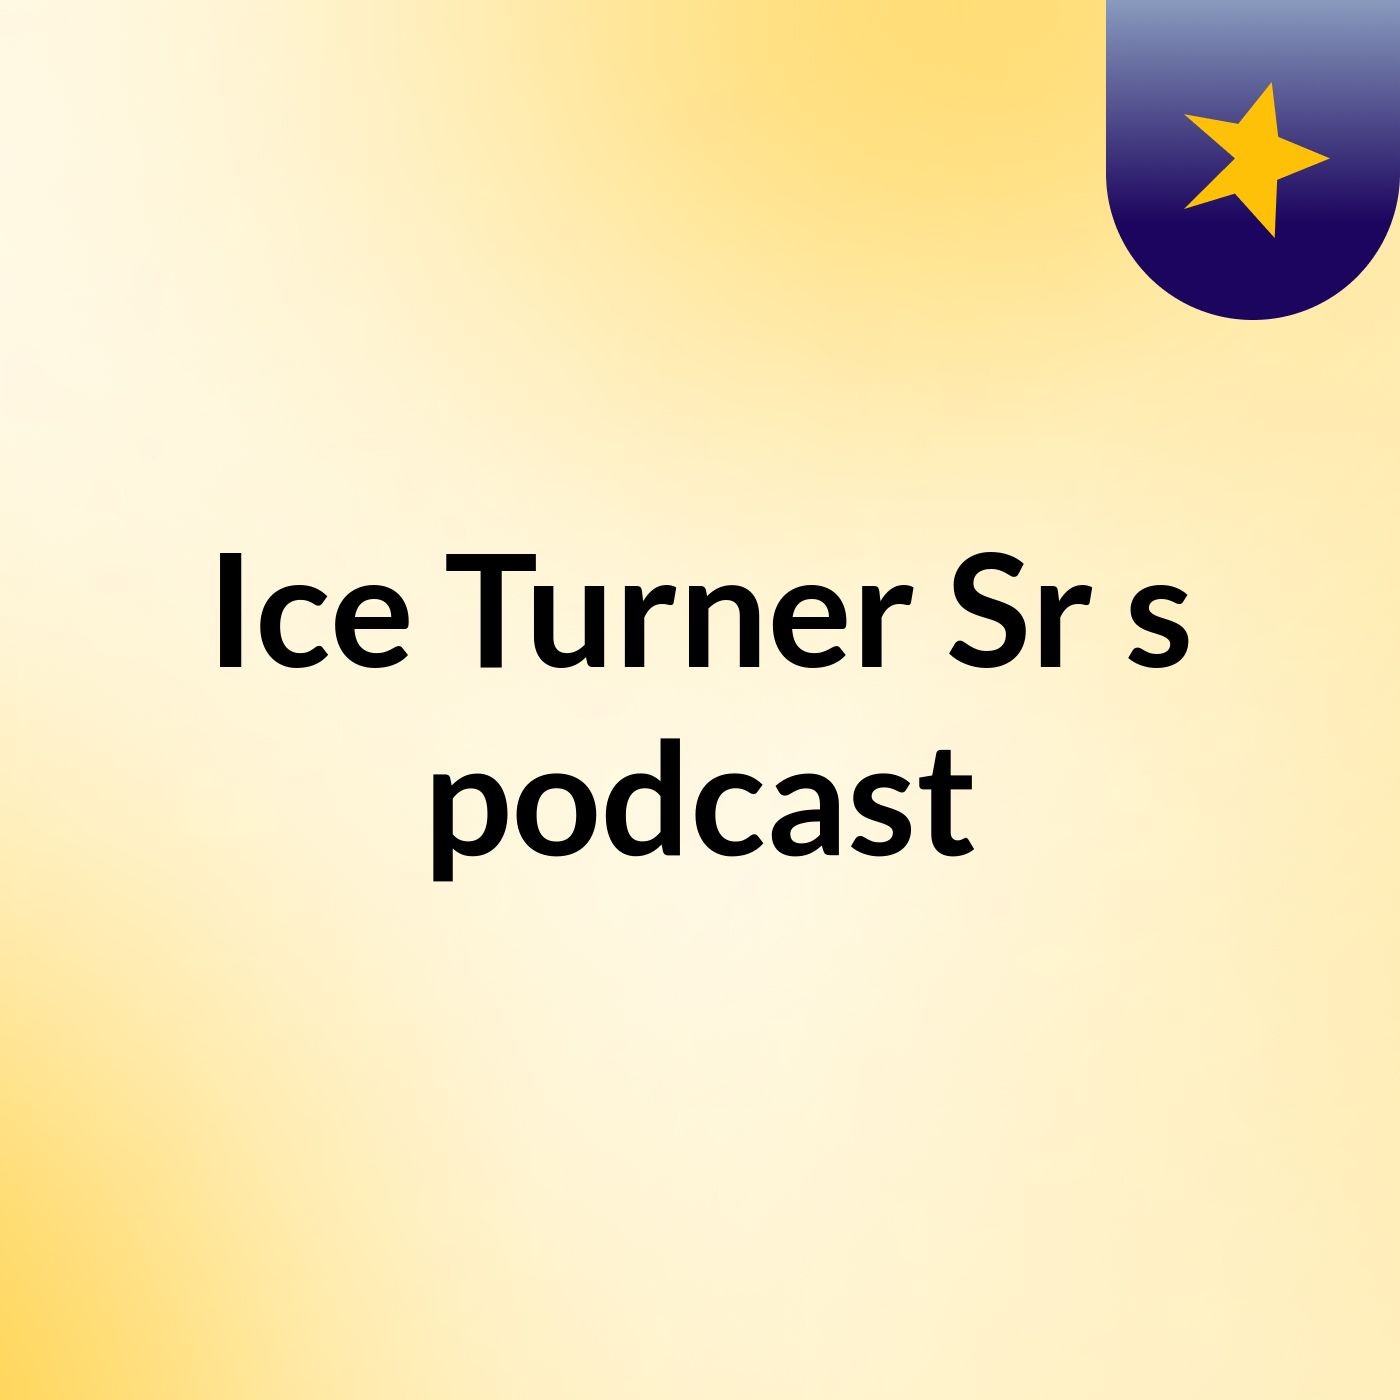 Ice Turner Sr's podcast